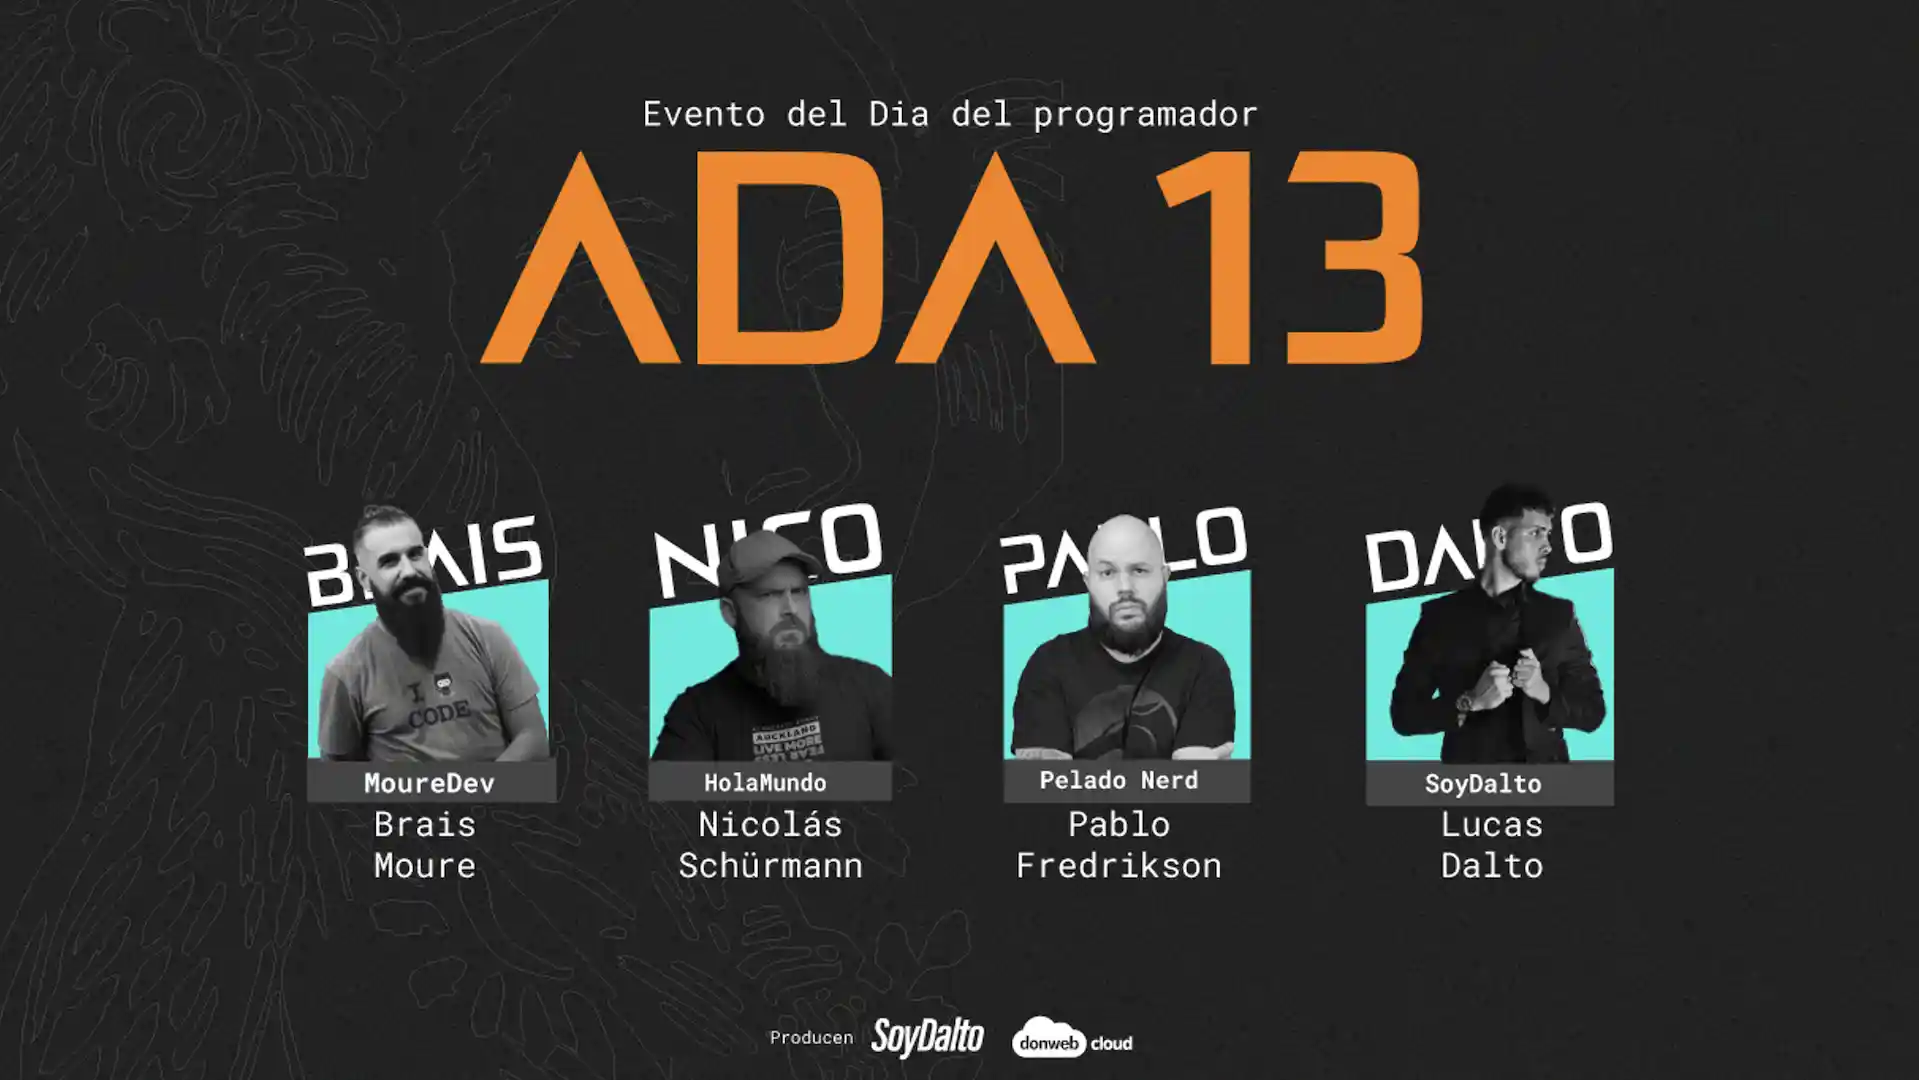 Llega el evento ADA13: una celebración de cara al Día del Programador